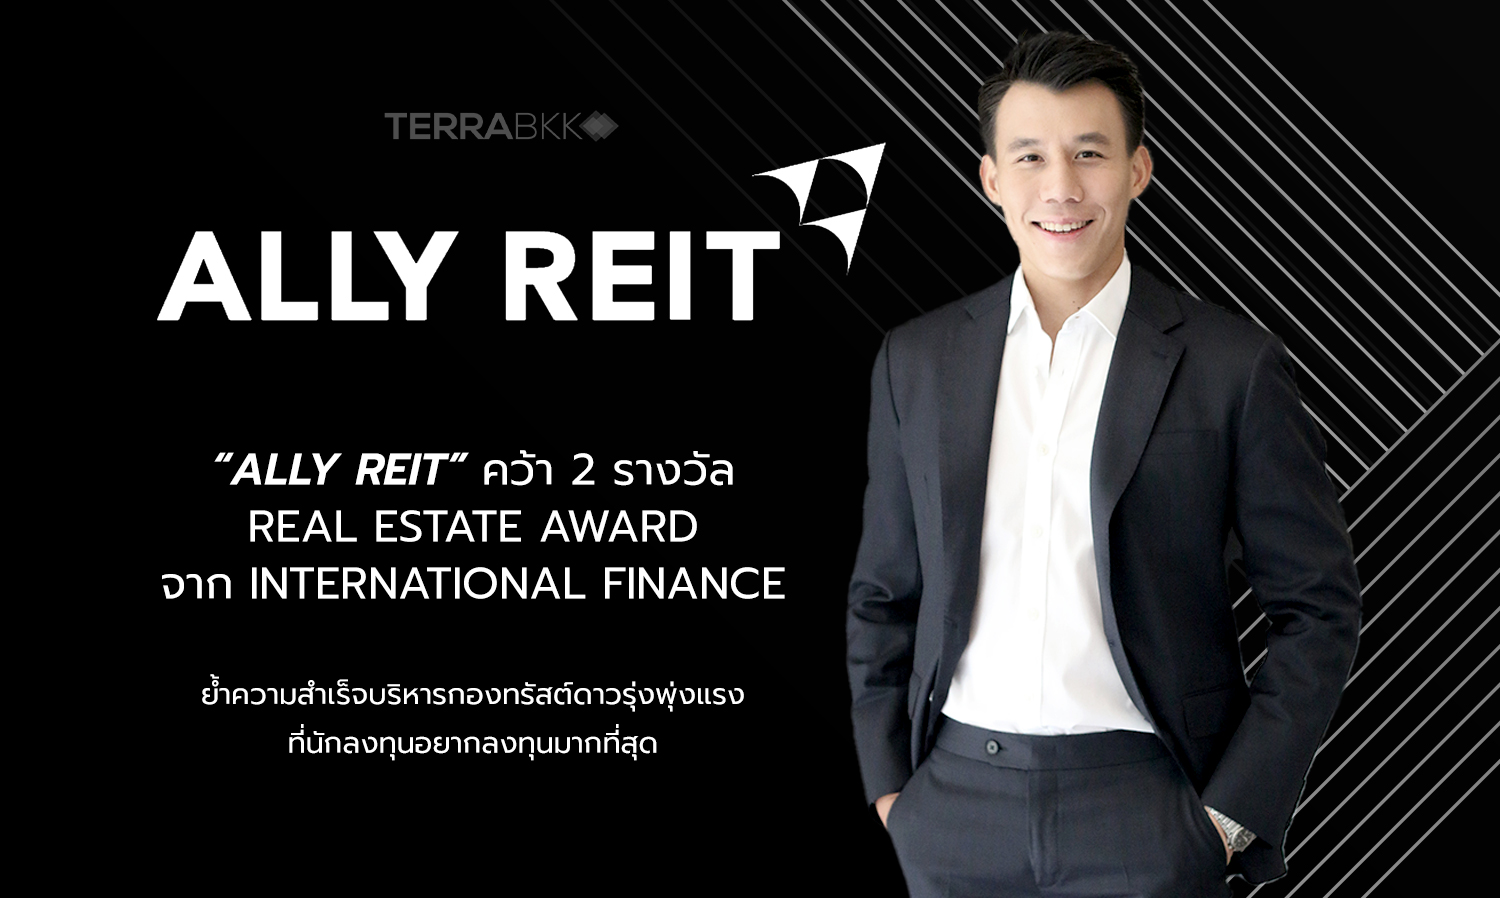 “ALLY REIT” คว้า 2 รางวัล จาก International Finance ย้ำความสำเร็จบริหารกองทรัสต์ดาวรุ่งพุ่งแรง ที่นักลงทุนอยากลงทุนมากที่สุด